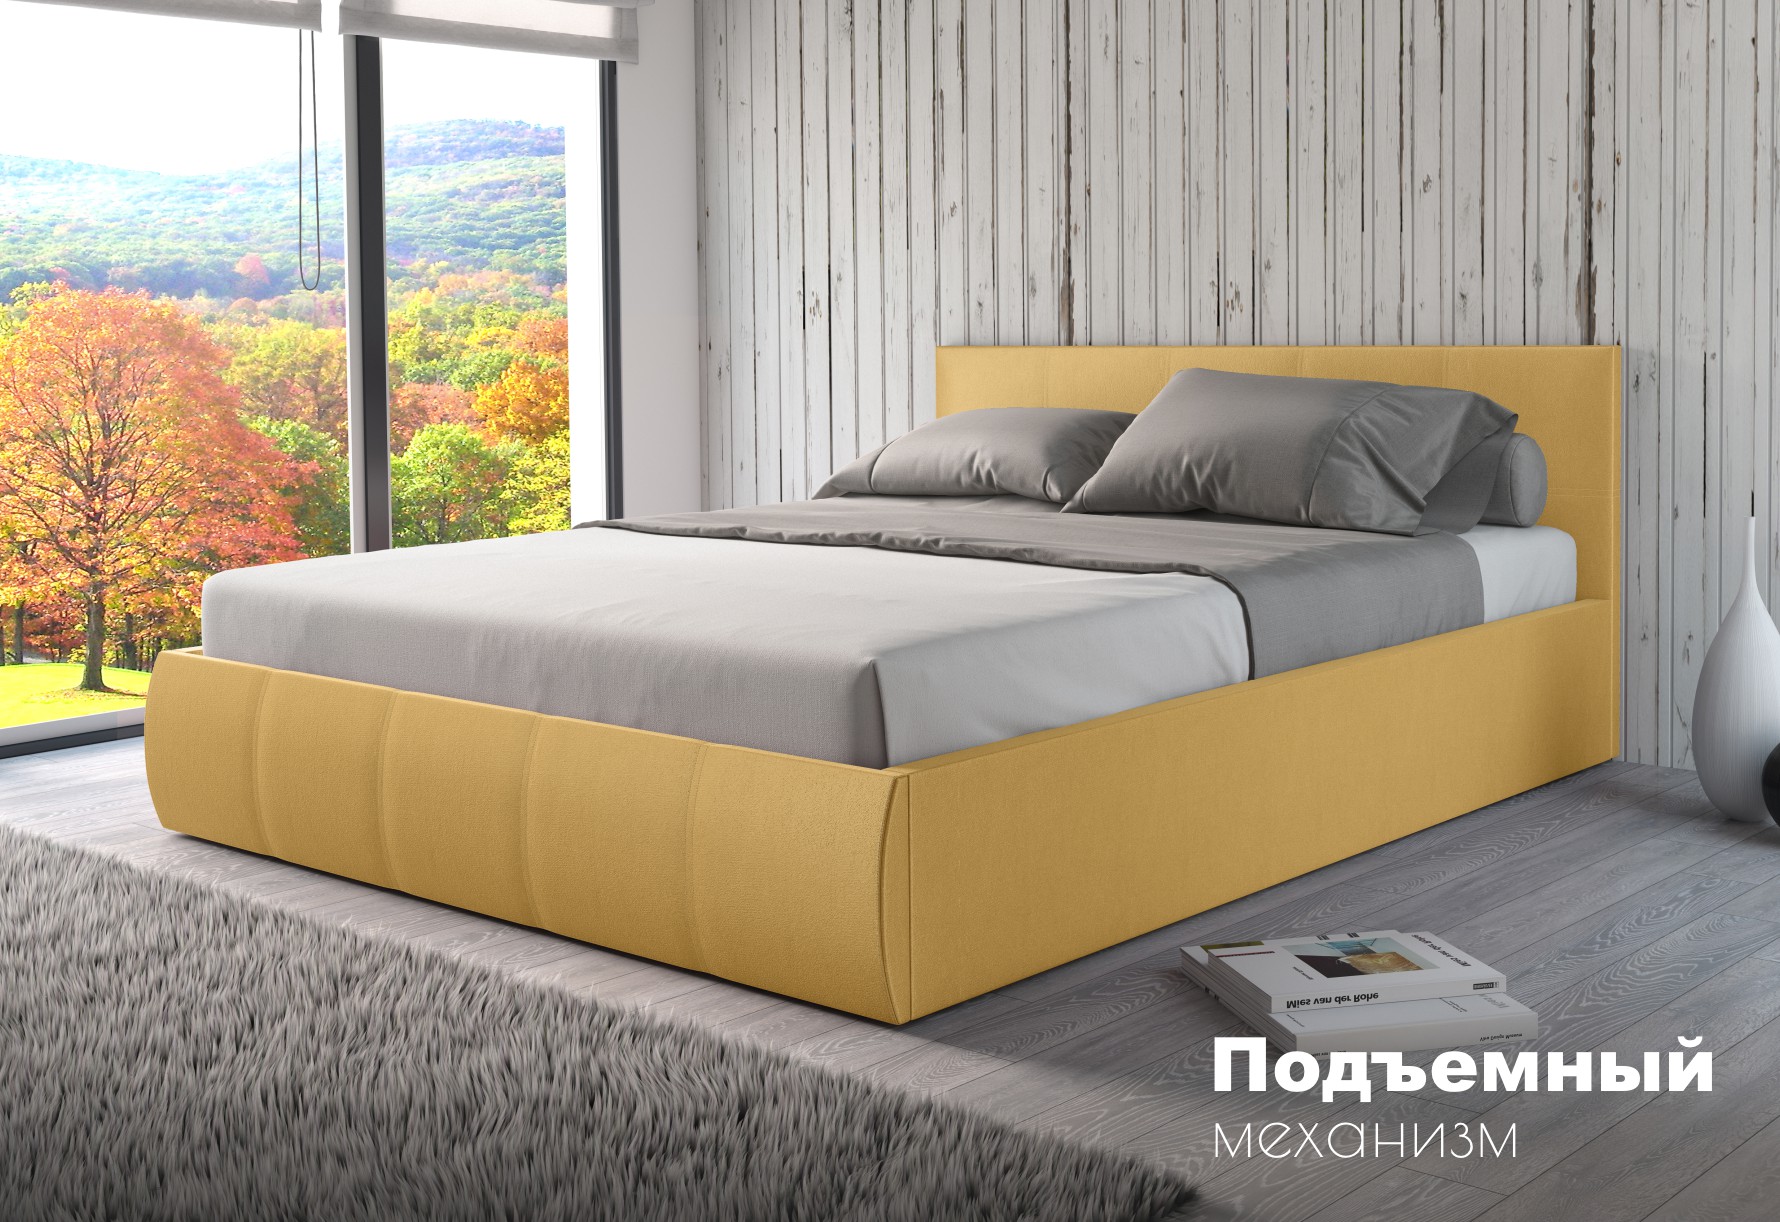 Мягкая кровать Верона 160, цвет bingo mustard (подъемник)